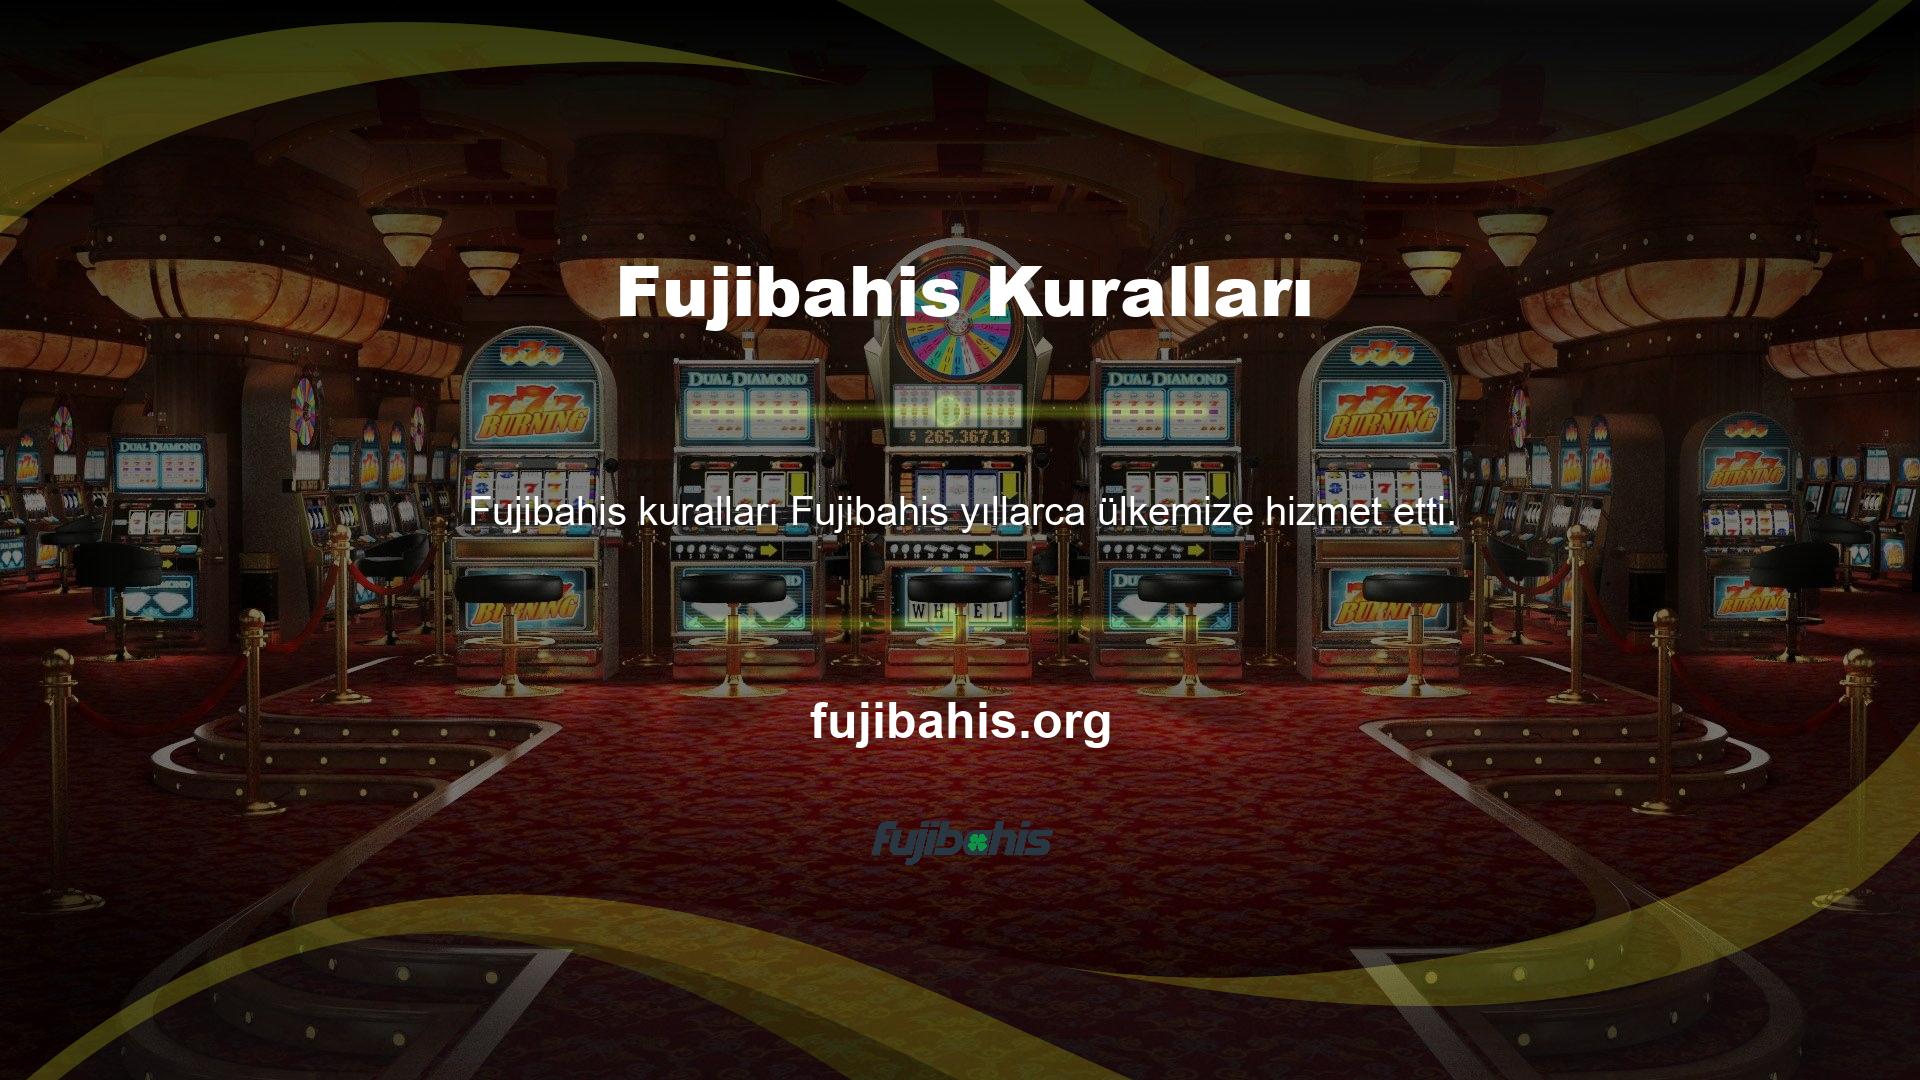 Fujibahis, oyun severlerin en sevdiği oyunlardan biridir